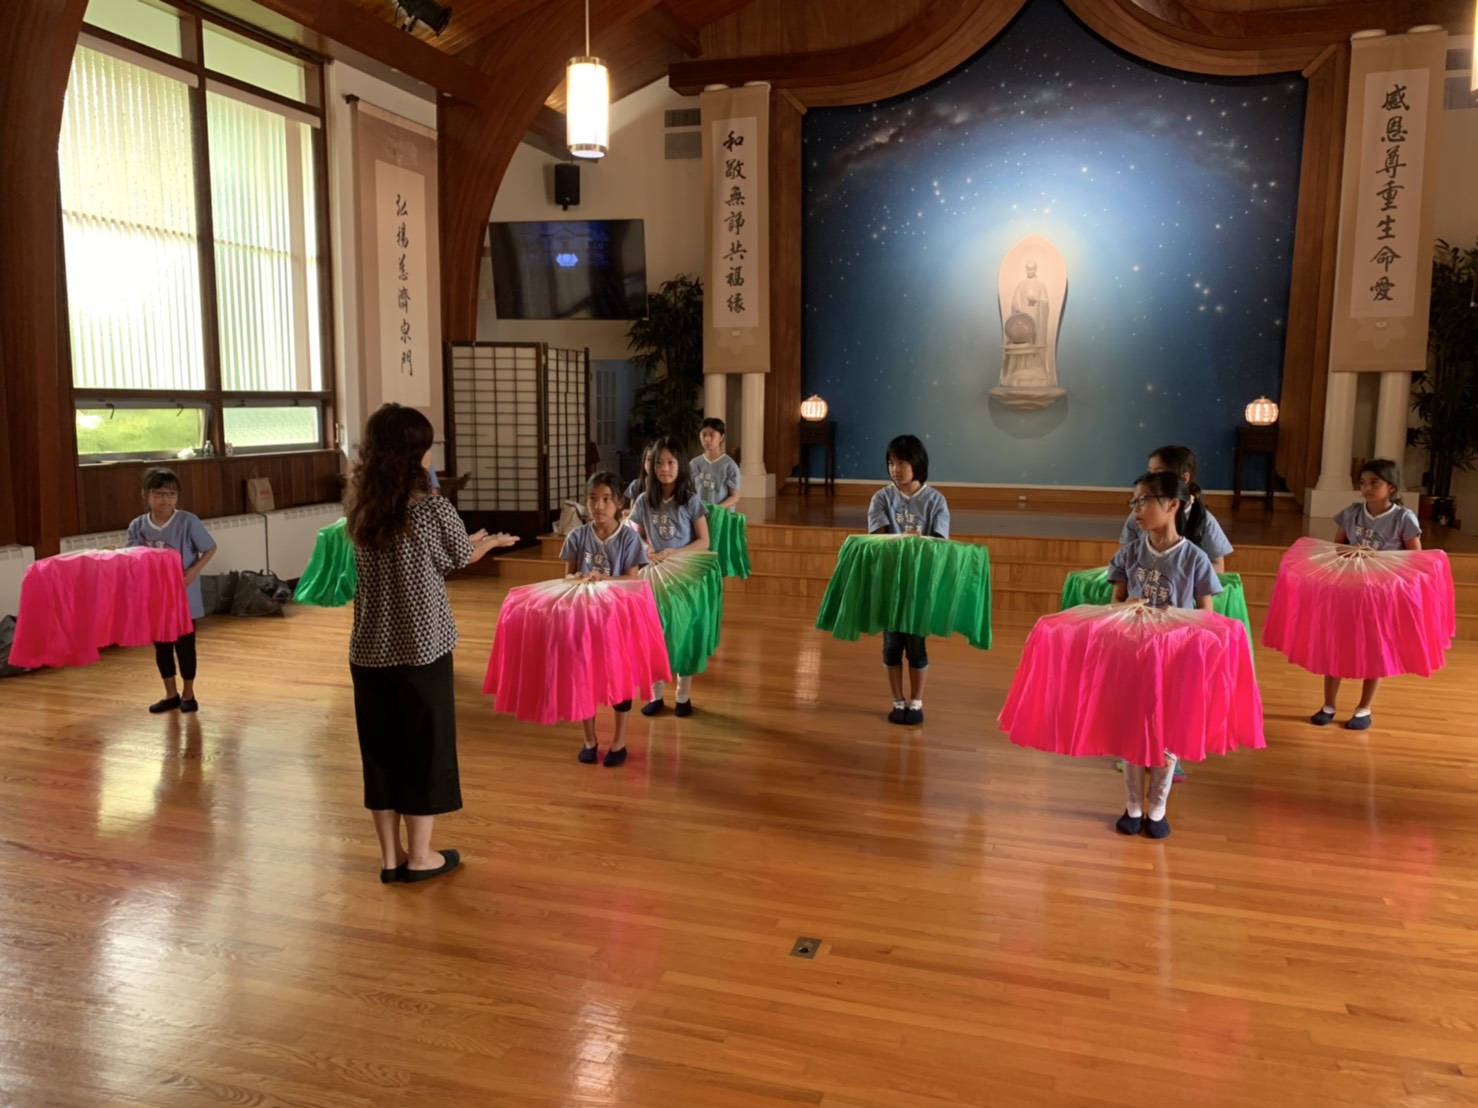 荷塘春色的舞蹈節目由台灣派出的曾慧禎老師專業指導。